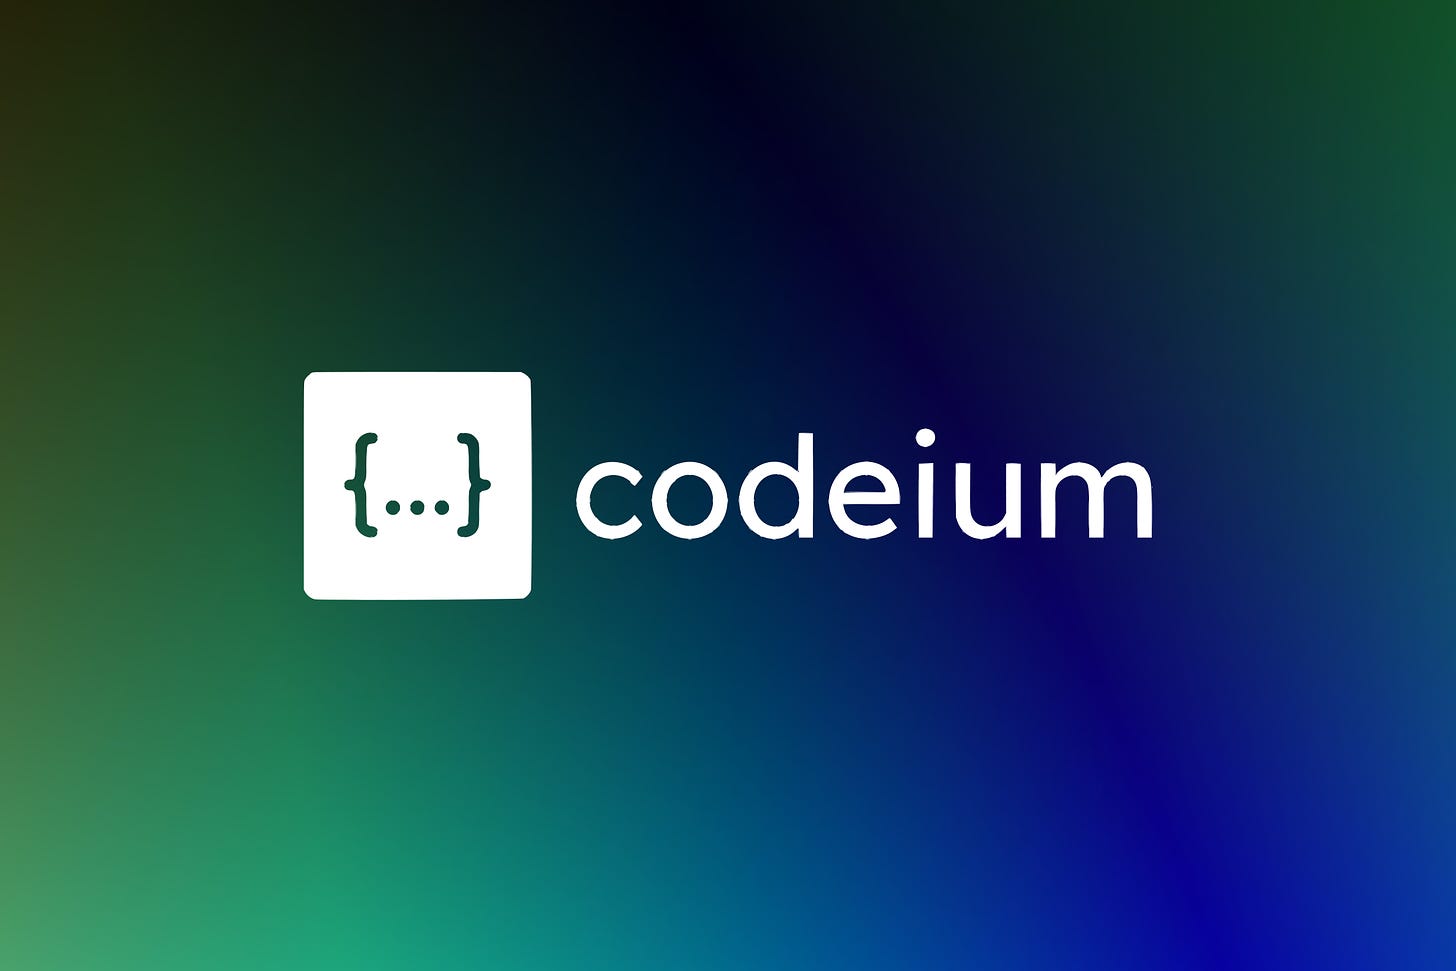 Codeium-NewsGrid-1500x100.jpg